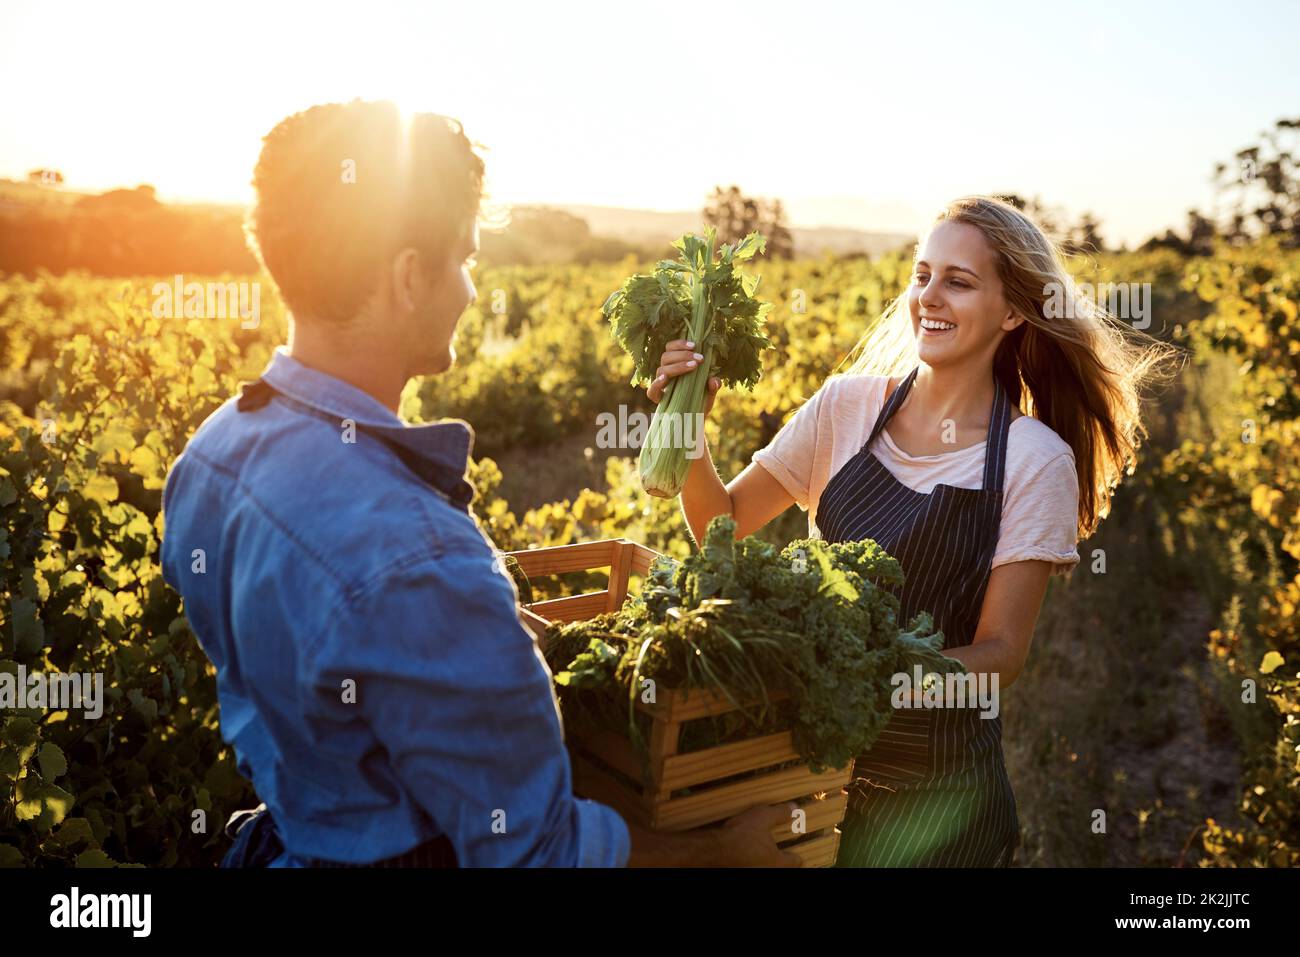 Ich überlasse diese Euch. Eine kleine Aufnahme eines hübschen jungen Mannes und einer attraktiven jungen Frau, die auf einem Bauernhof zusammenarbeiten. Stockfoto